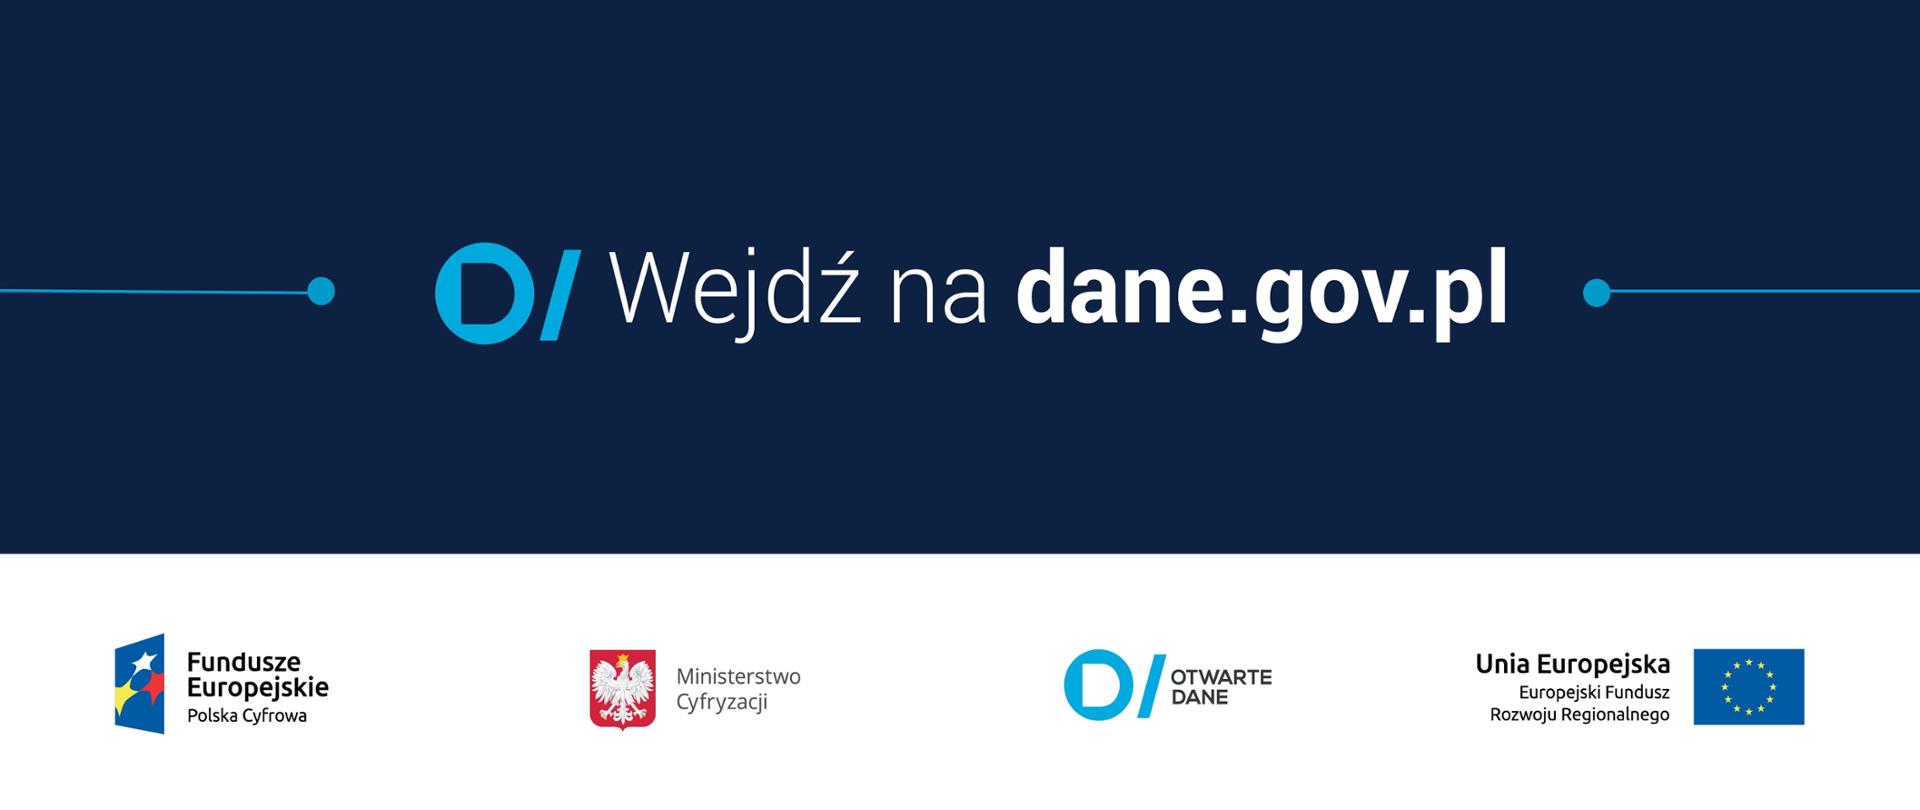 napis wejdź na dane.gov.pl oraz logotypy Funduszy Regionalnych, Ministerstwa Cyfryzacji, Otwartych danych, Unii Europejskiej